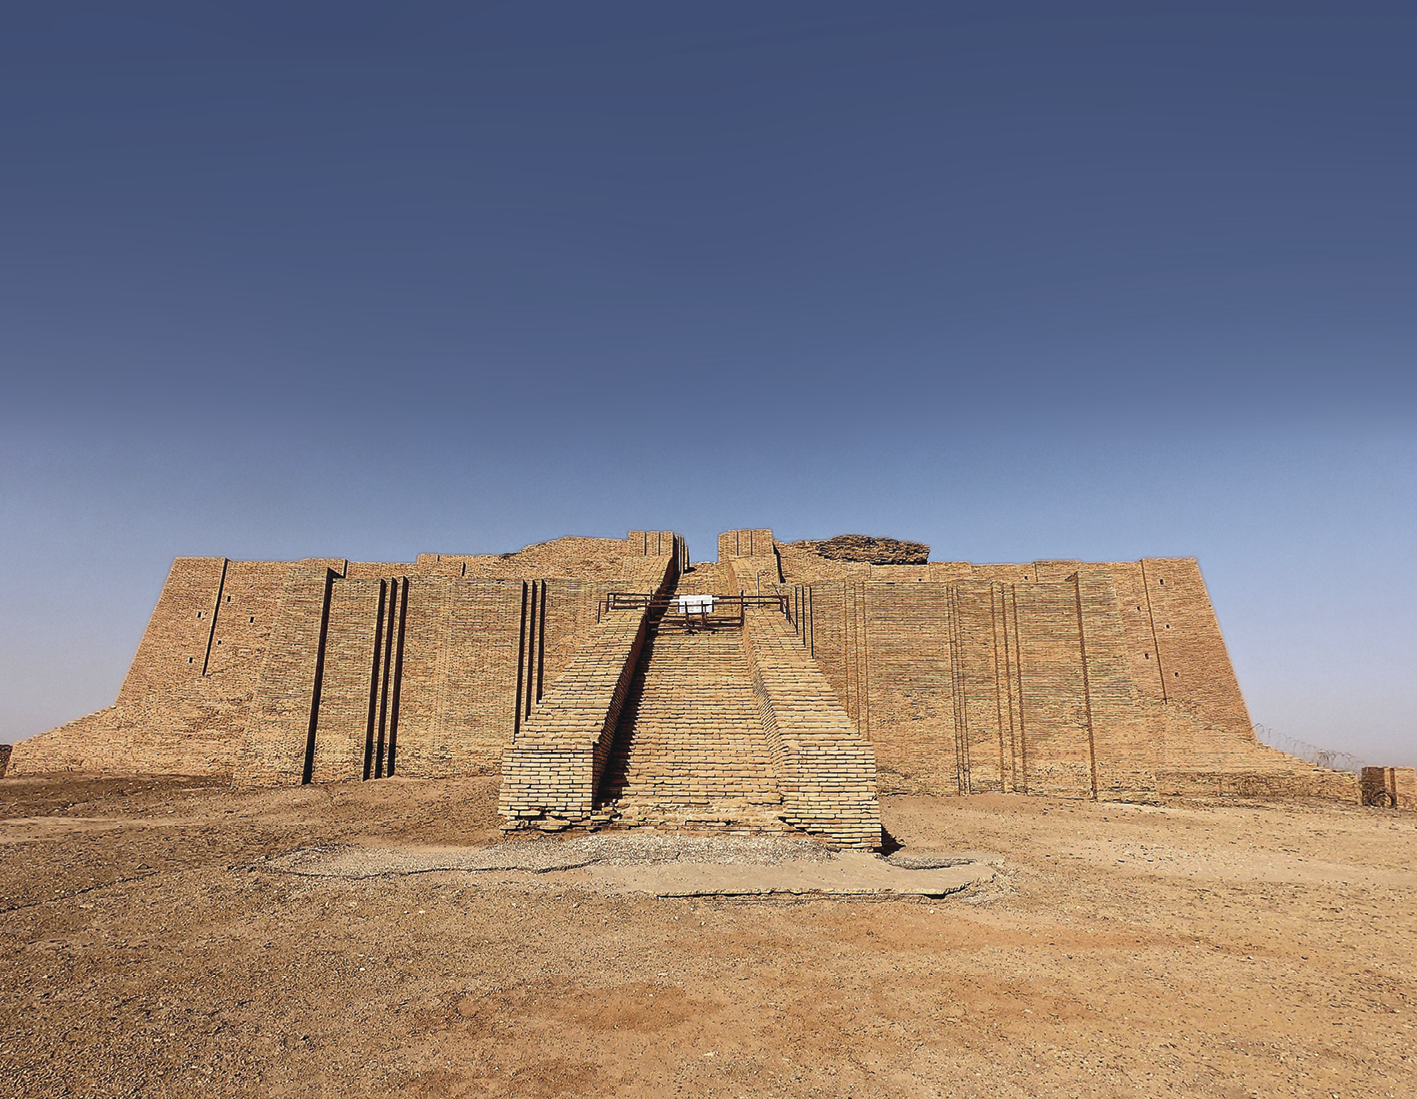 Fotografia. Construção quadrada de pedra vista de frente com uma grande escadaria na parte frontal, em um campo aberto coberto de areia. Ao fundo, céu azul.